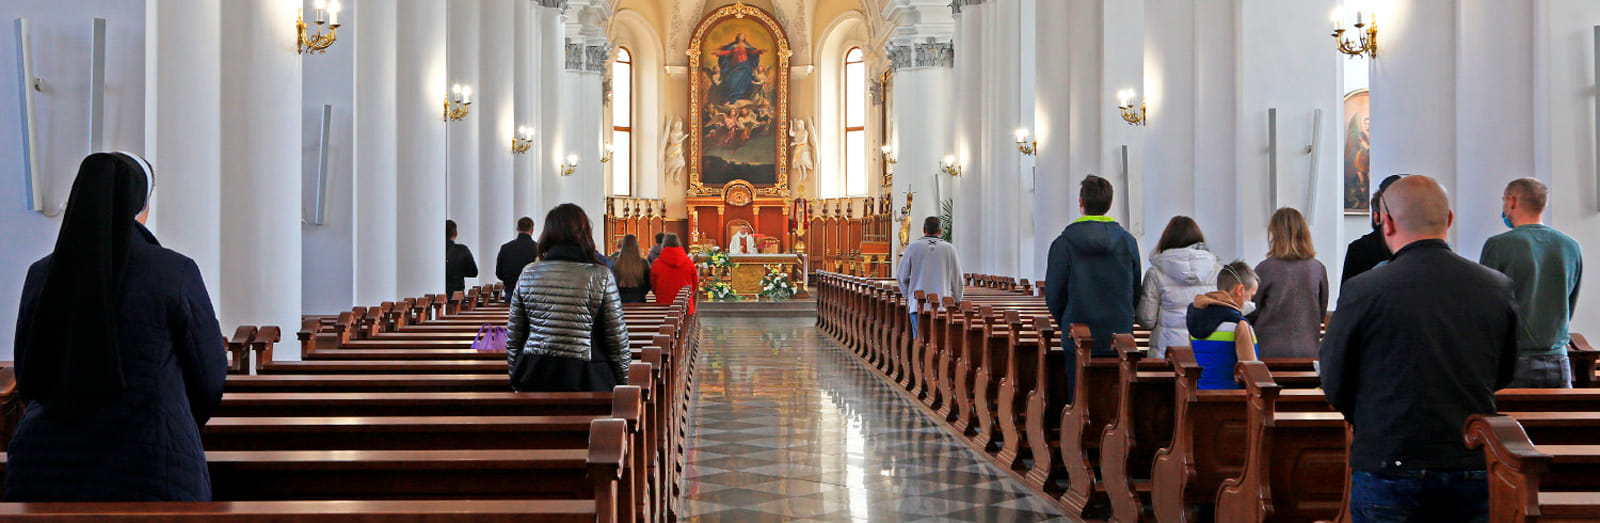 Как римо-католики пасхи святили: репортаж из киевского костела